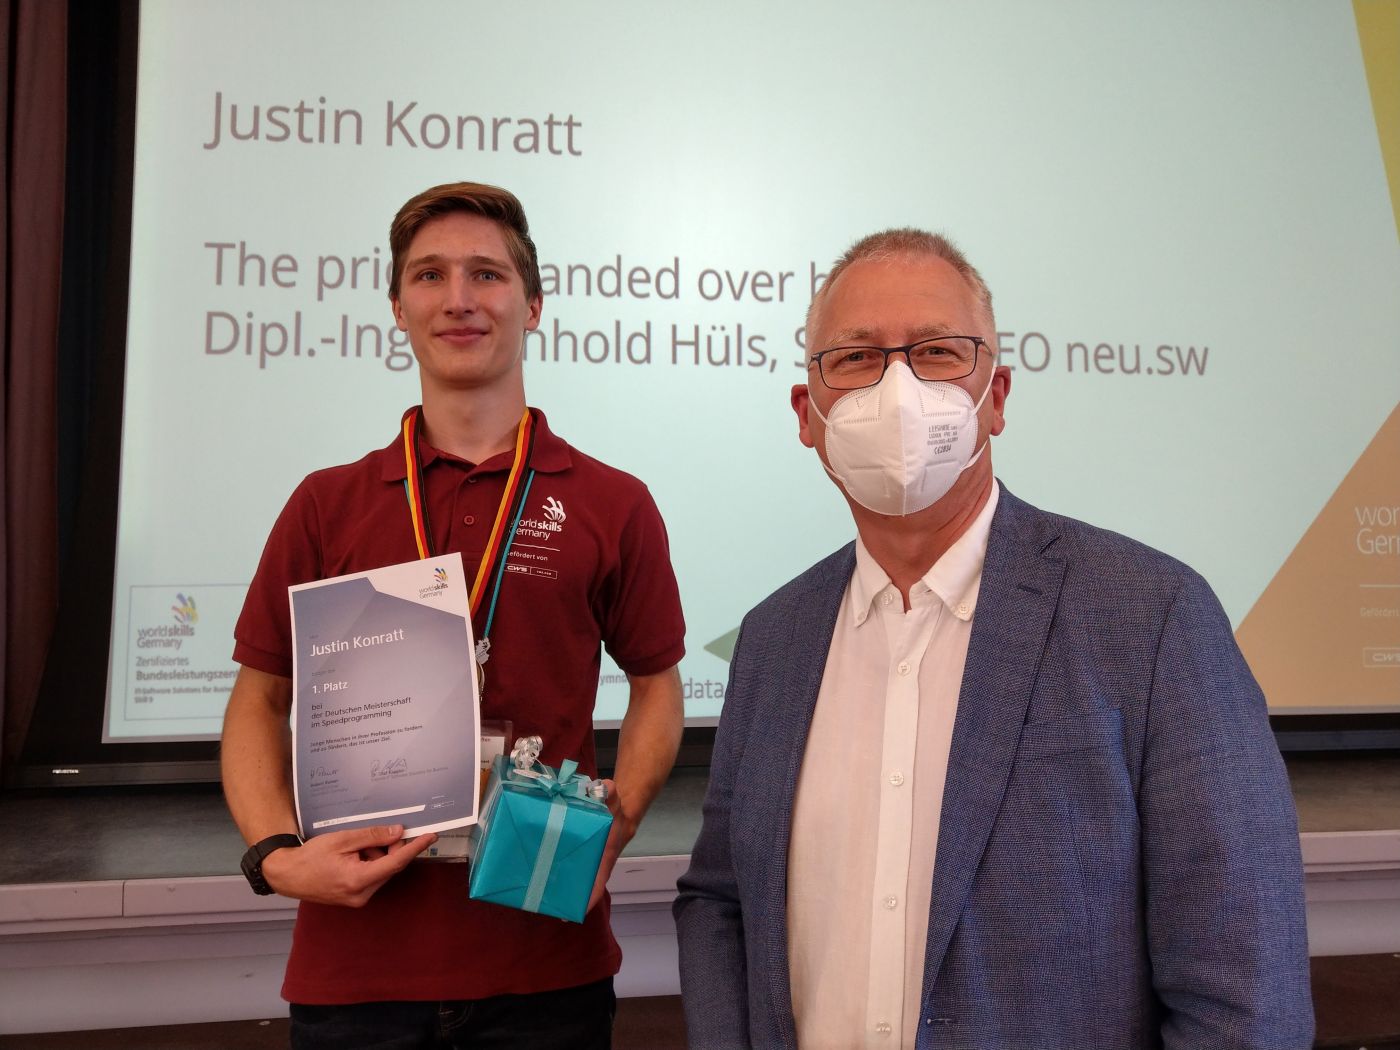 Sieger des Speedprogramming-Wettbewerbs Justin Konratt mit neu.sw Geschäftsführer Reinhold Hüls